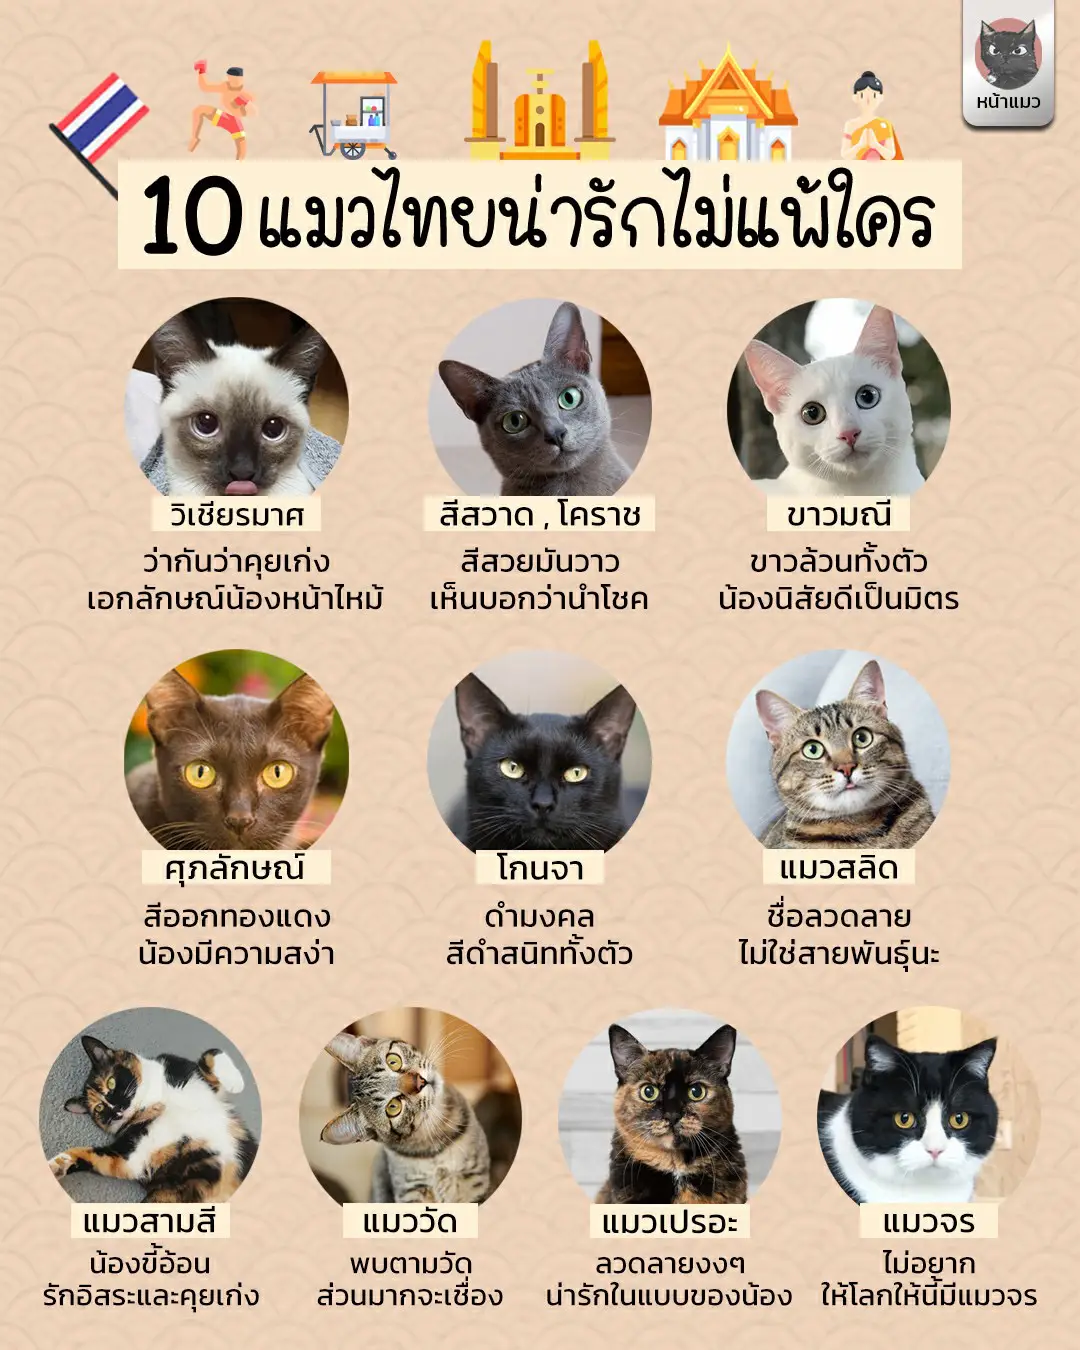 10 แมวไทยสุดน่ารัก 🇹🇭 | แกลเลอรีที่โพสต์โดย หน้าแมว | Lemon8